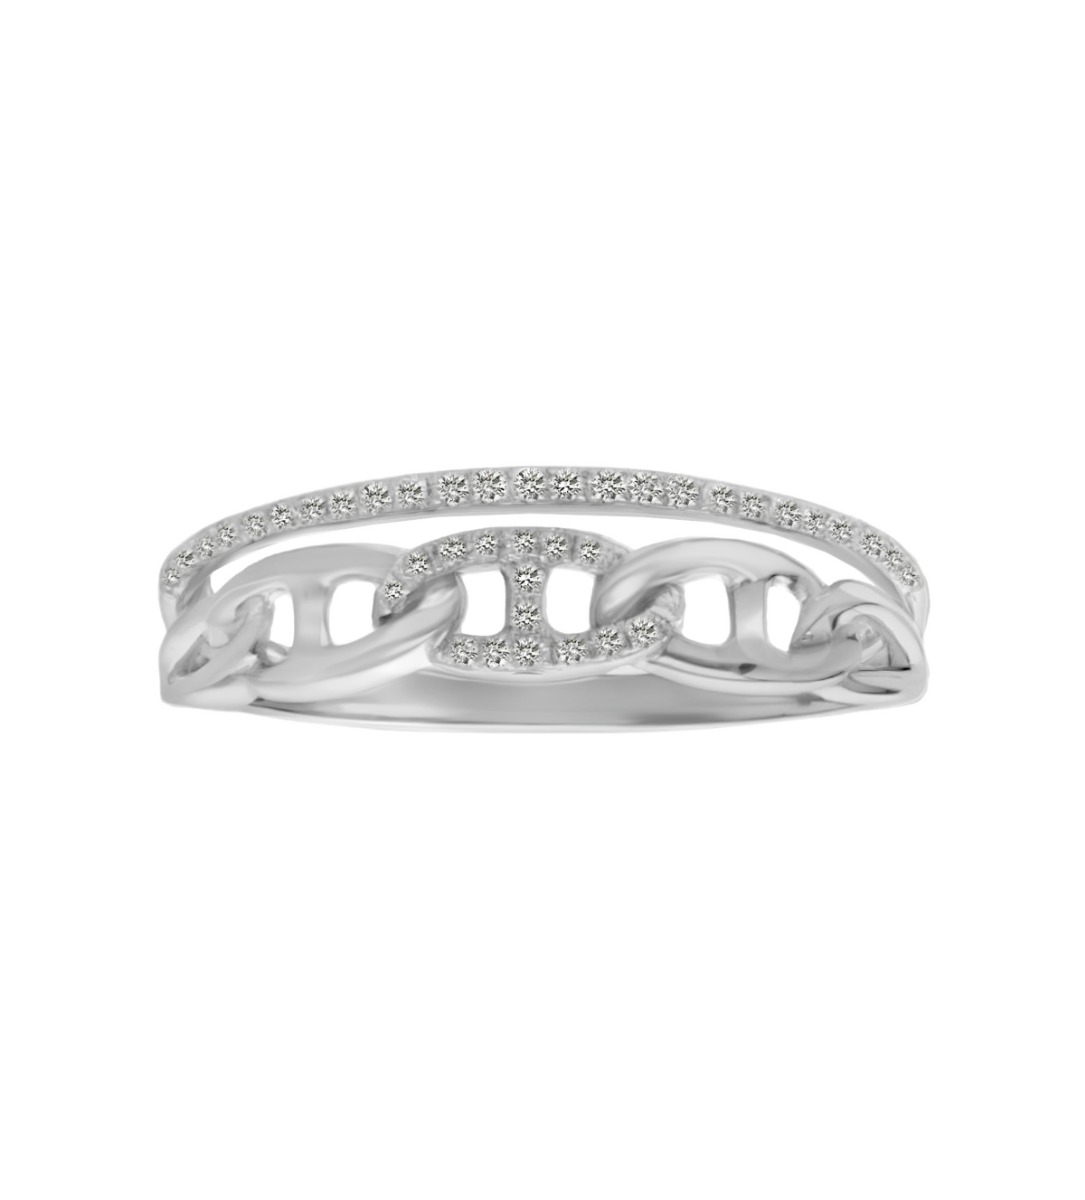 anillo oro blanco 18 ktes con diamantes modelo cadena calabrote toma frontal para web